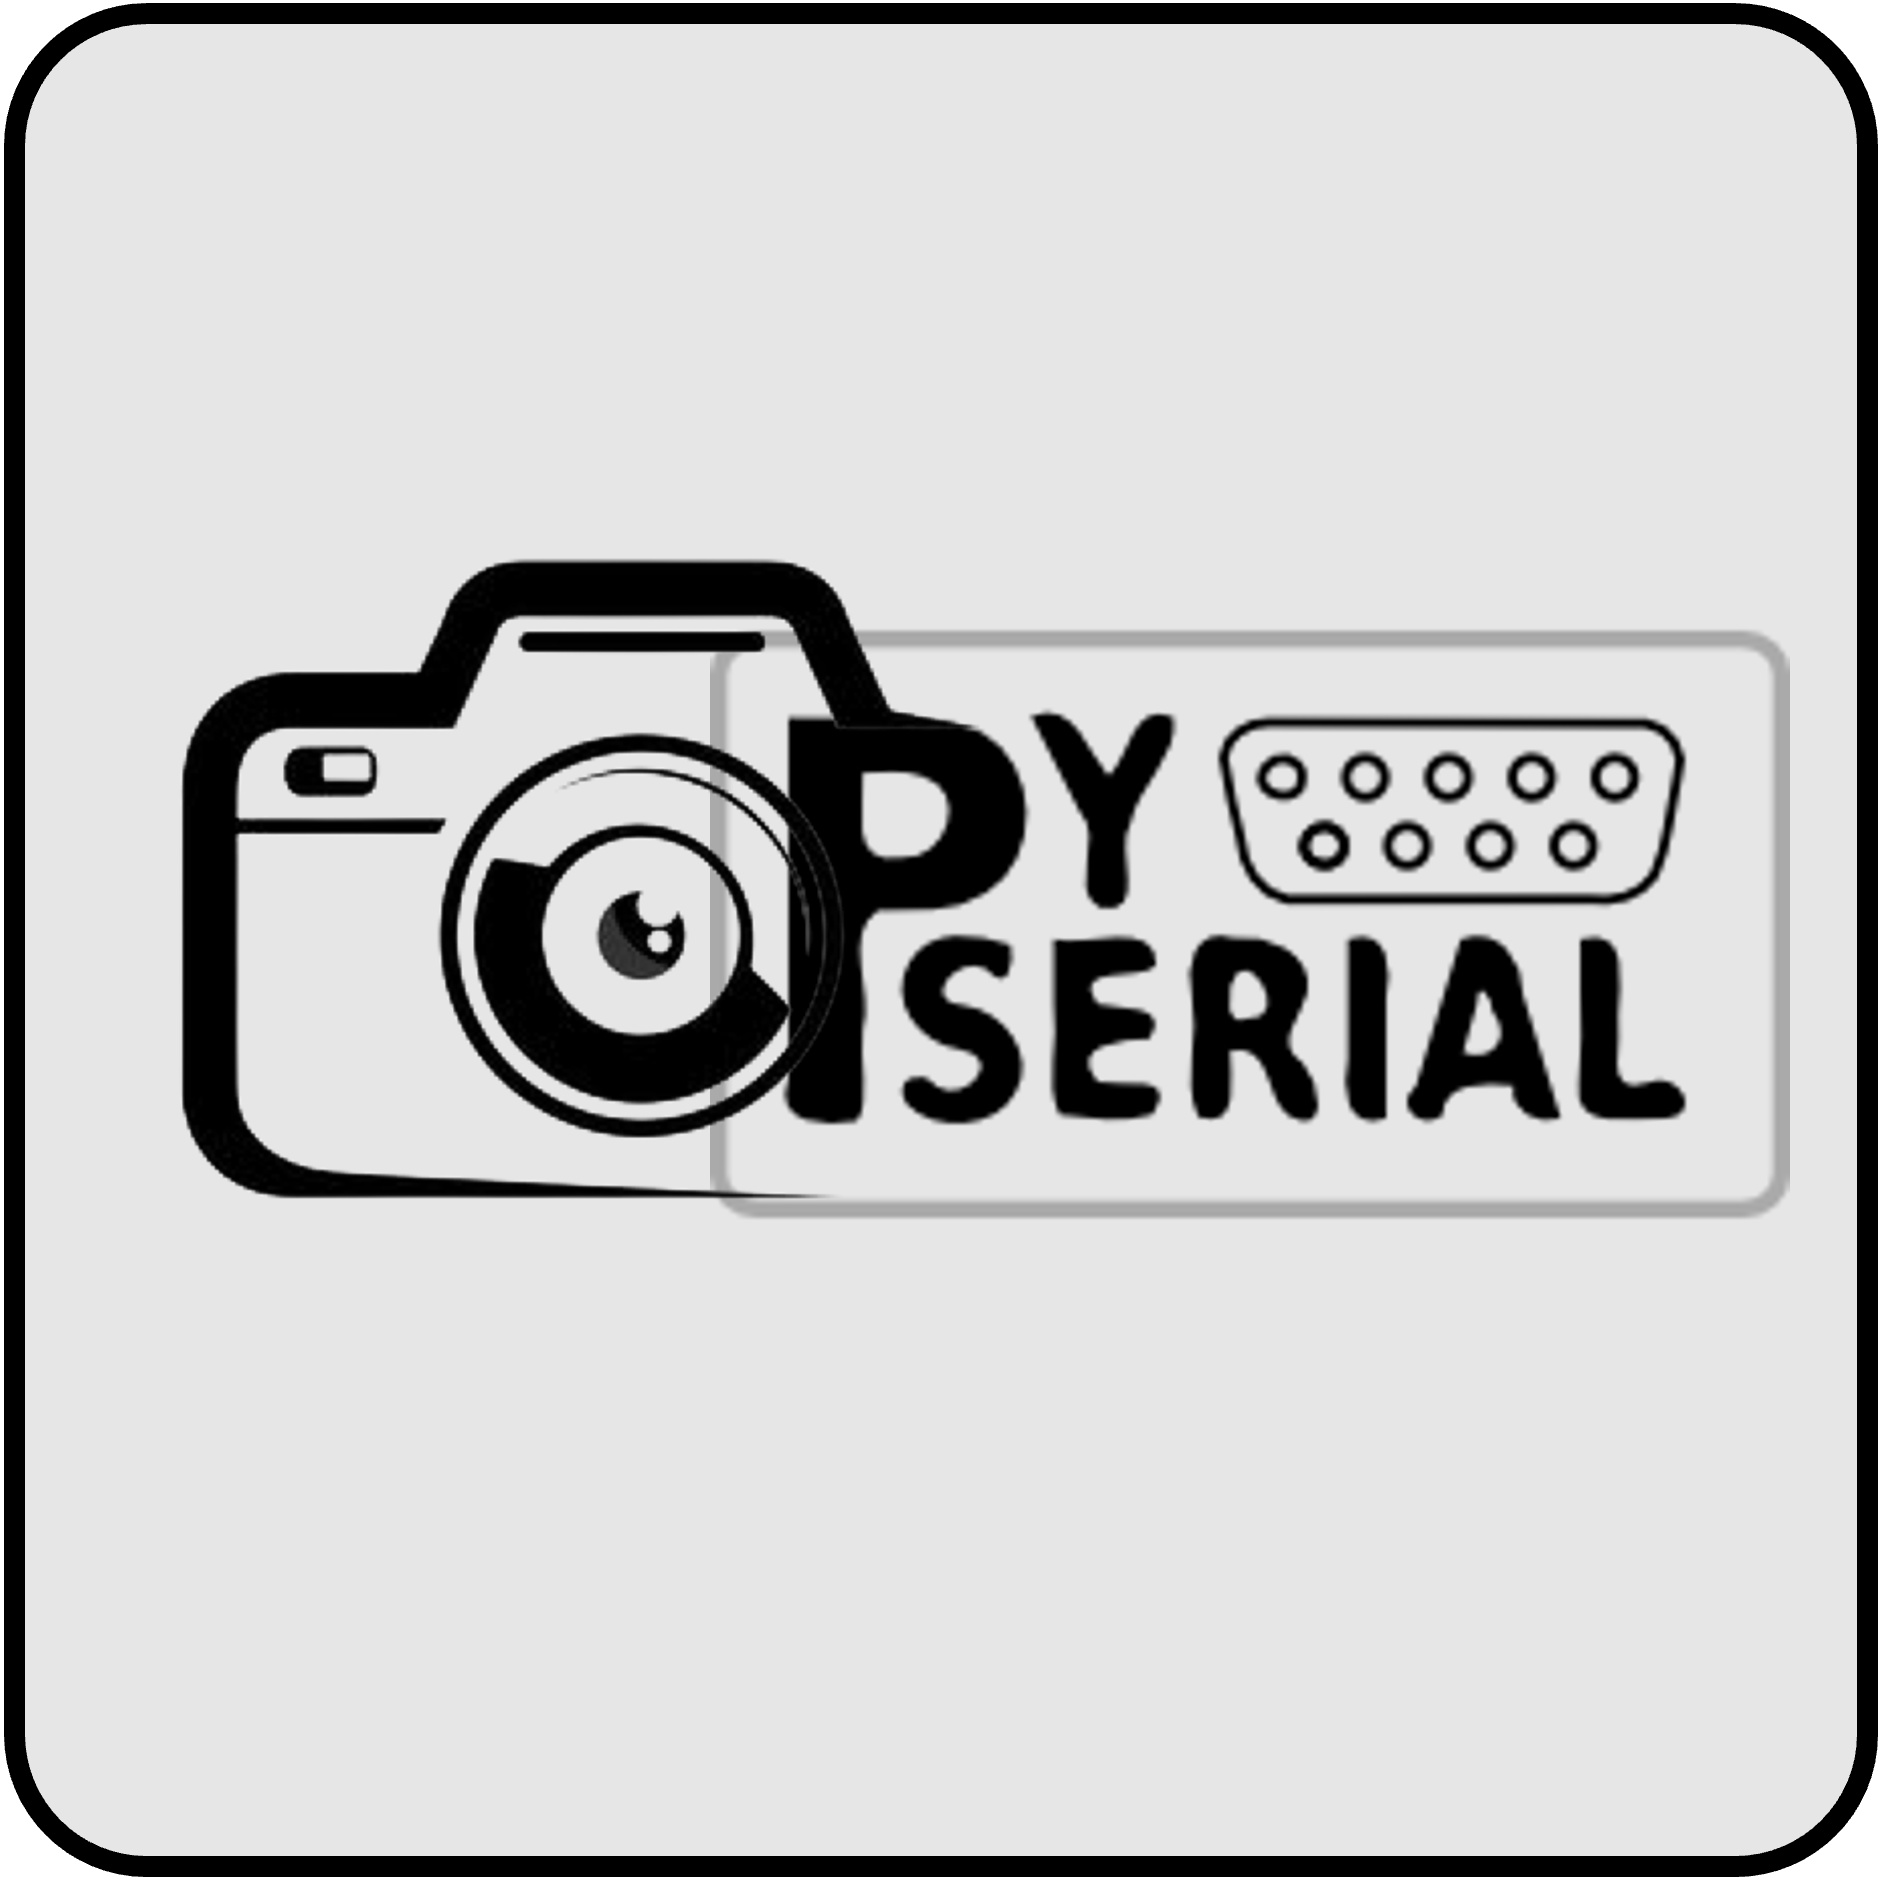 ESP32 Serial Camera